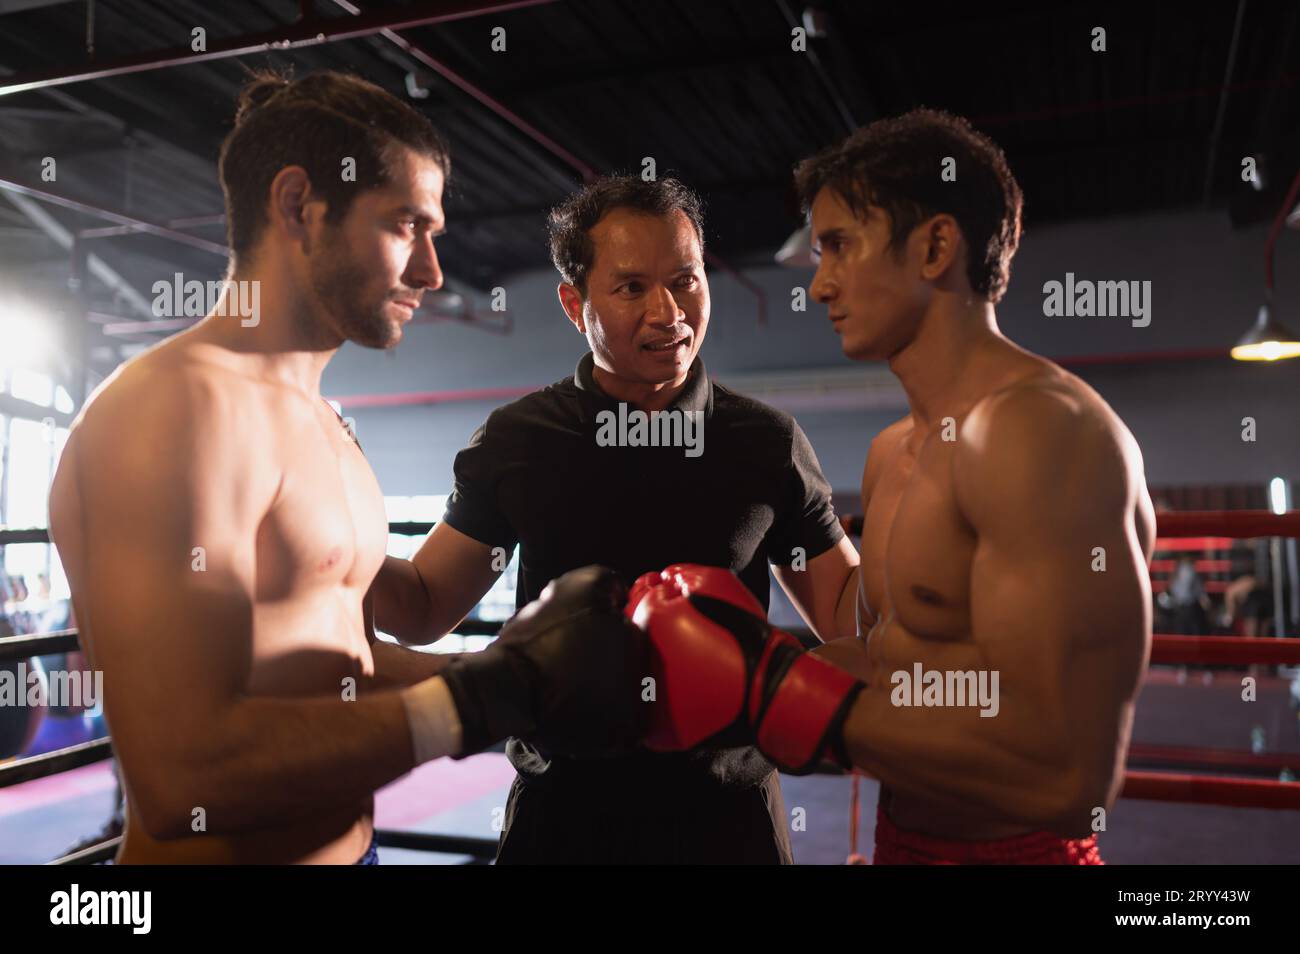 L'arbitre de boxe explique les règles avant que les deux boxeurs se battent, Muay Thai, arts martiaux thaïlandais Banque D'Images